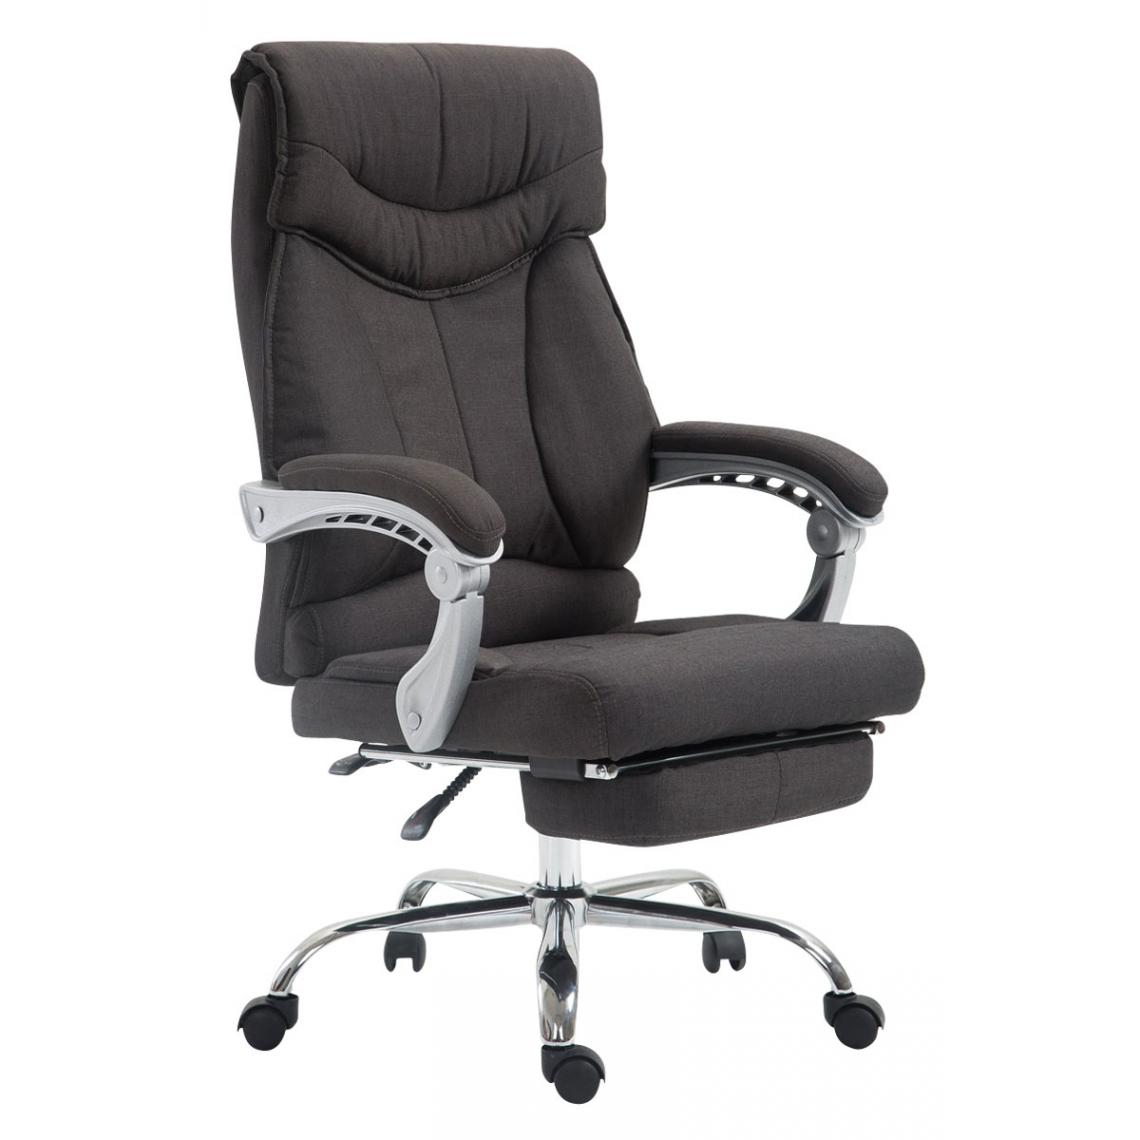 Icaverne - Magnifique Chaise de bureau reference Budapest Iowa tissu couleur gris foncé - Chaises